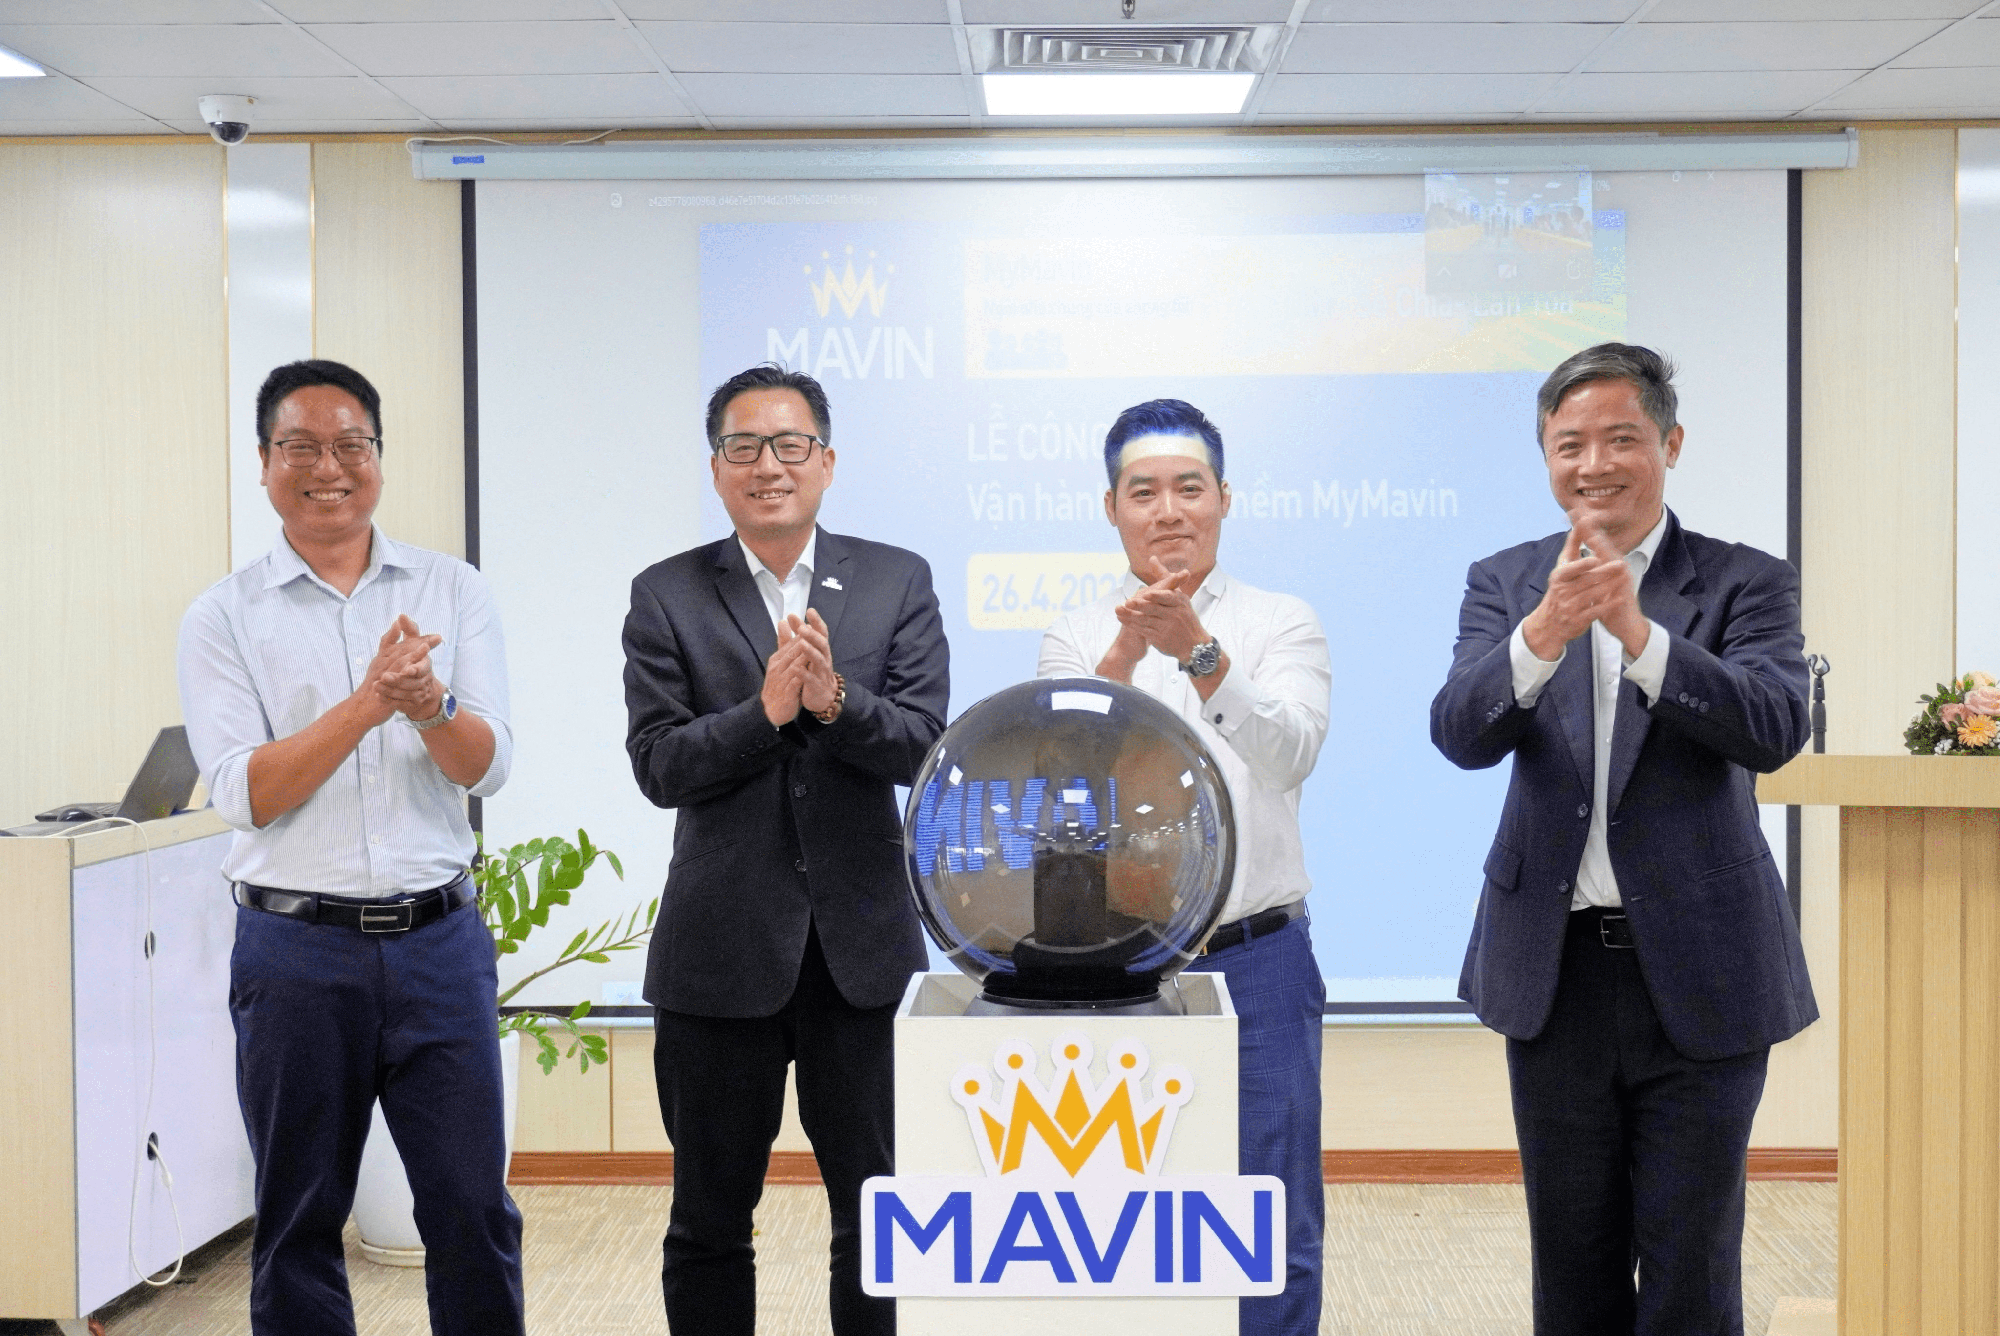 Mavin ra mắt phần mềm nội bộ MyMavin – giúp kết nối con người và lan tỏa văn hóa doanh nghiệp - Ảnh 2.